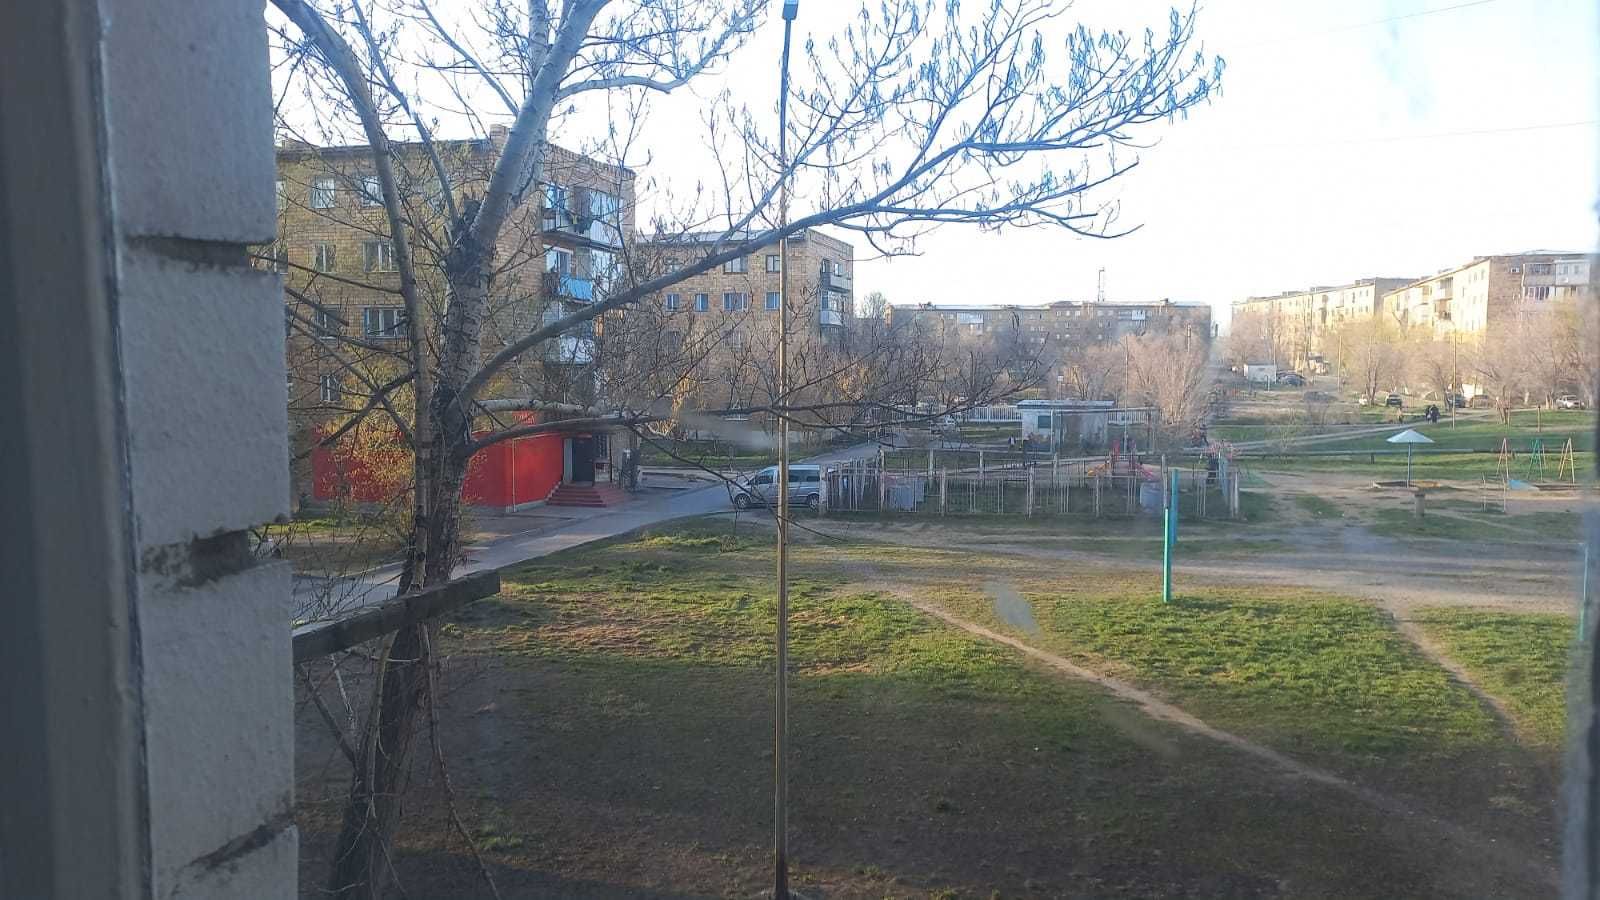 Квартира 2 комнатная в Пришахтинске. Продается.